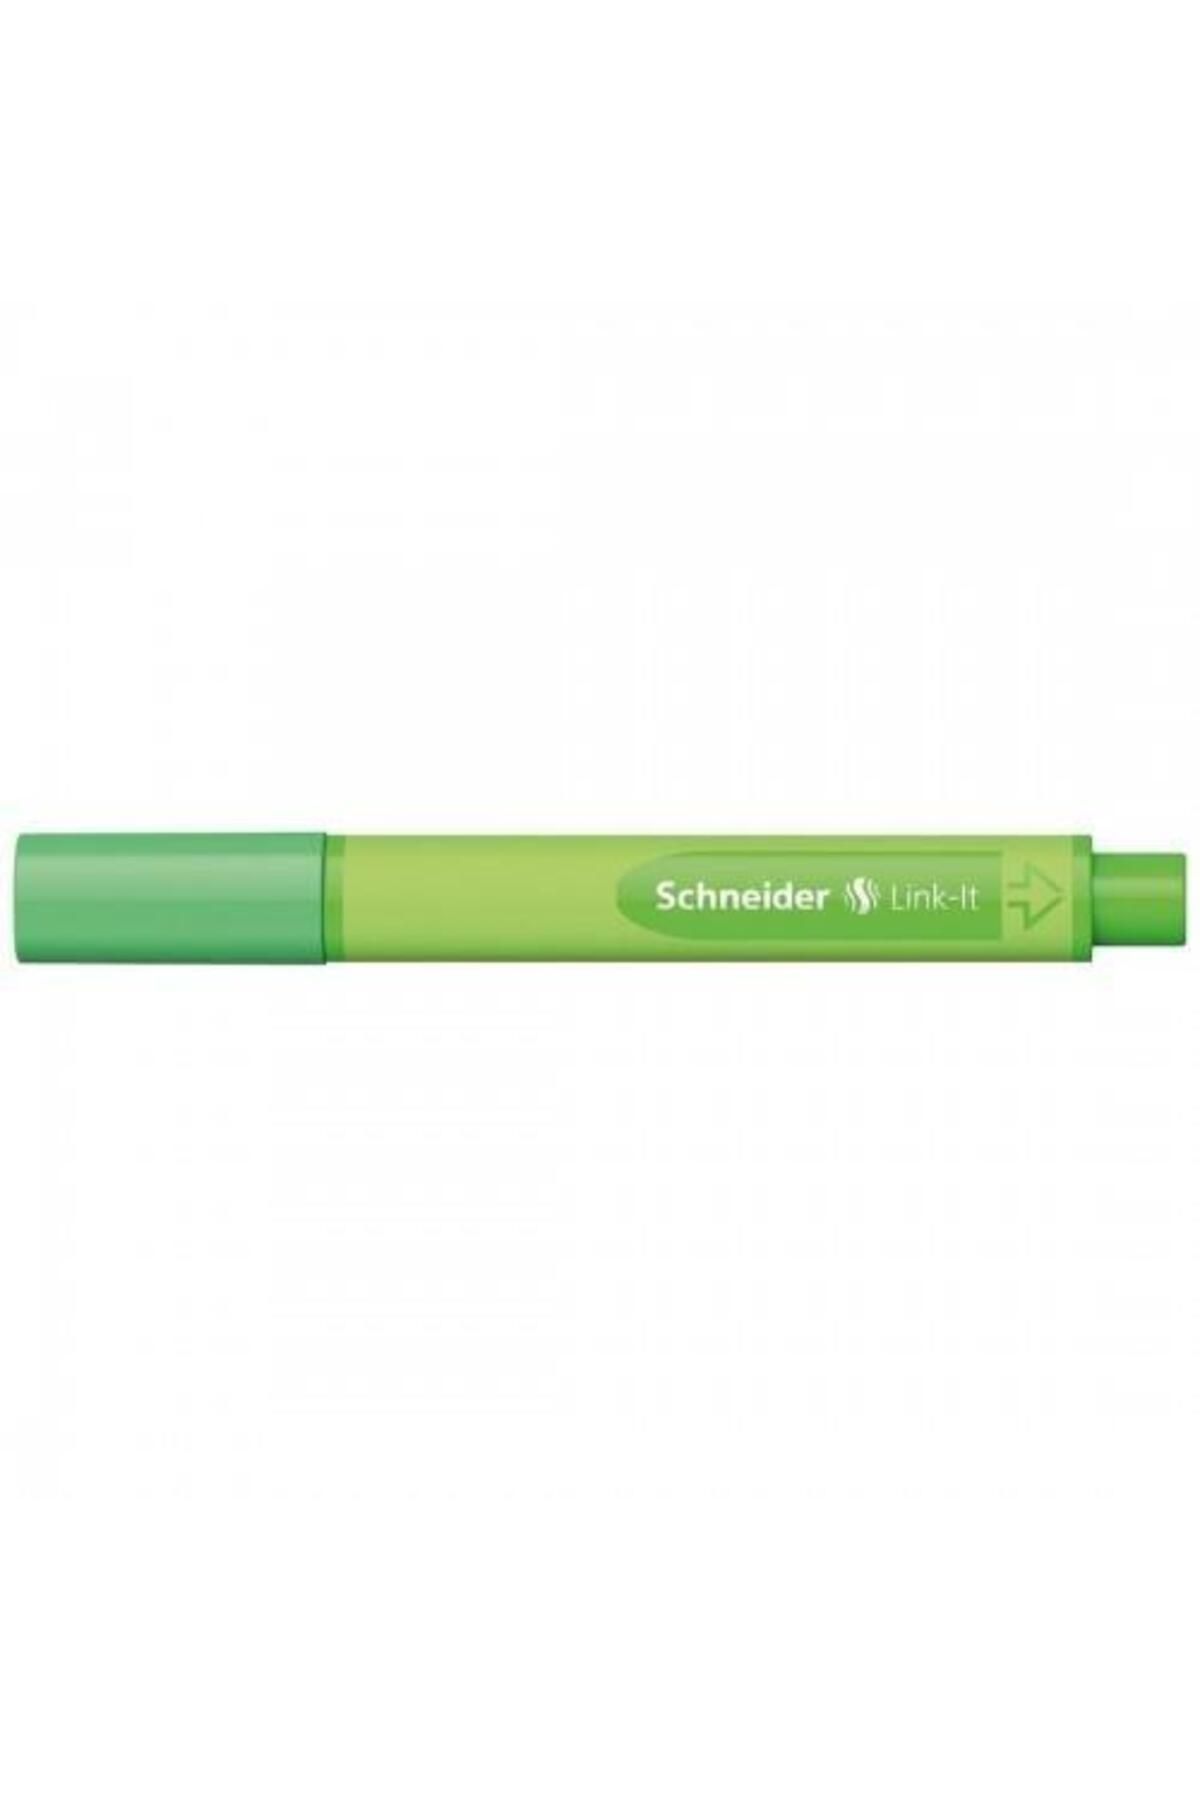 Schneider Link-ıt Fiber Uçlu Kalem 0.4 Mm Yosun Yeşili 191215